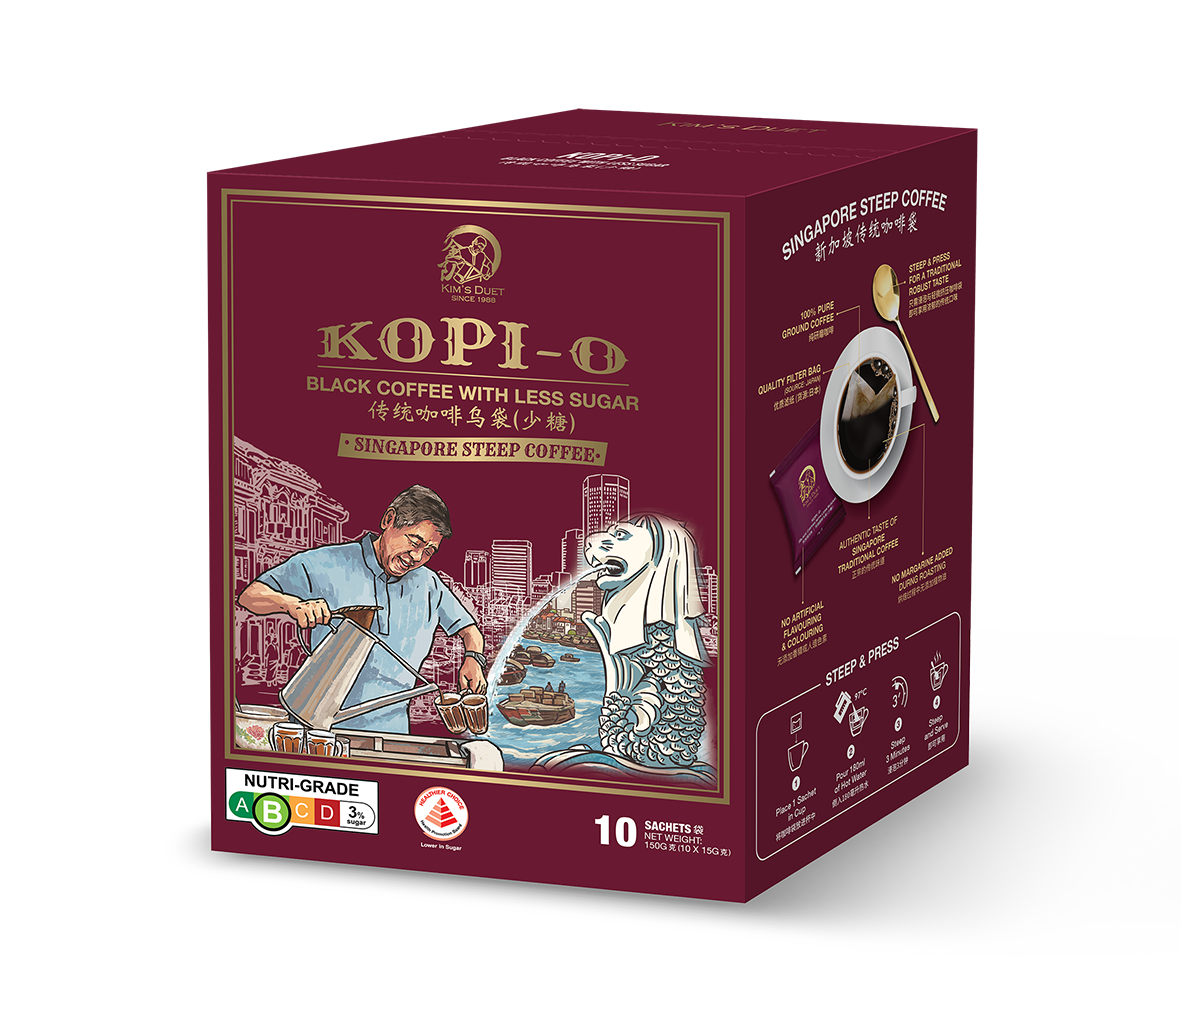 Kopi-O (Box of 10 sachets)